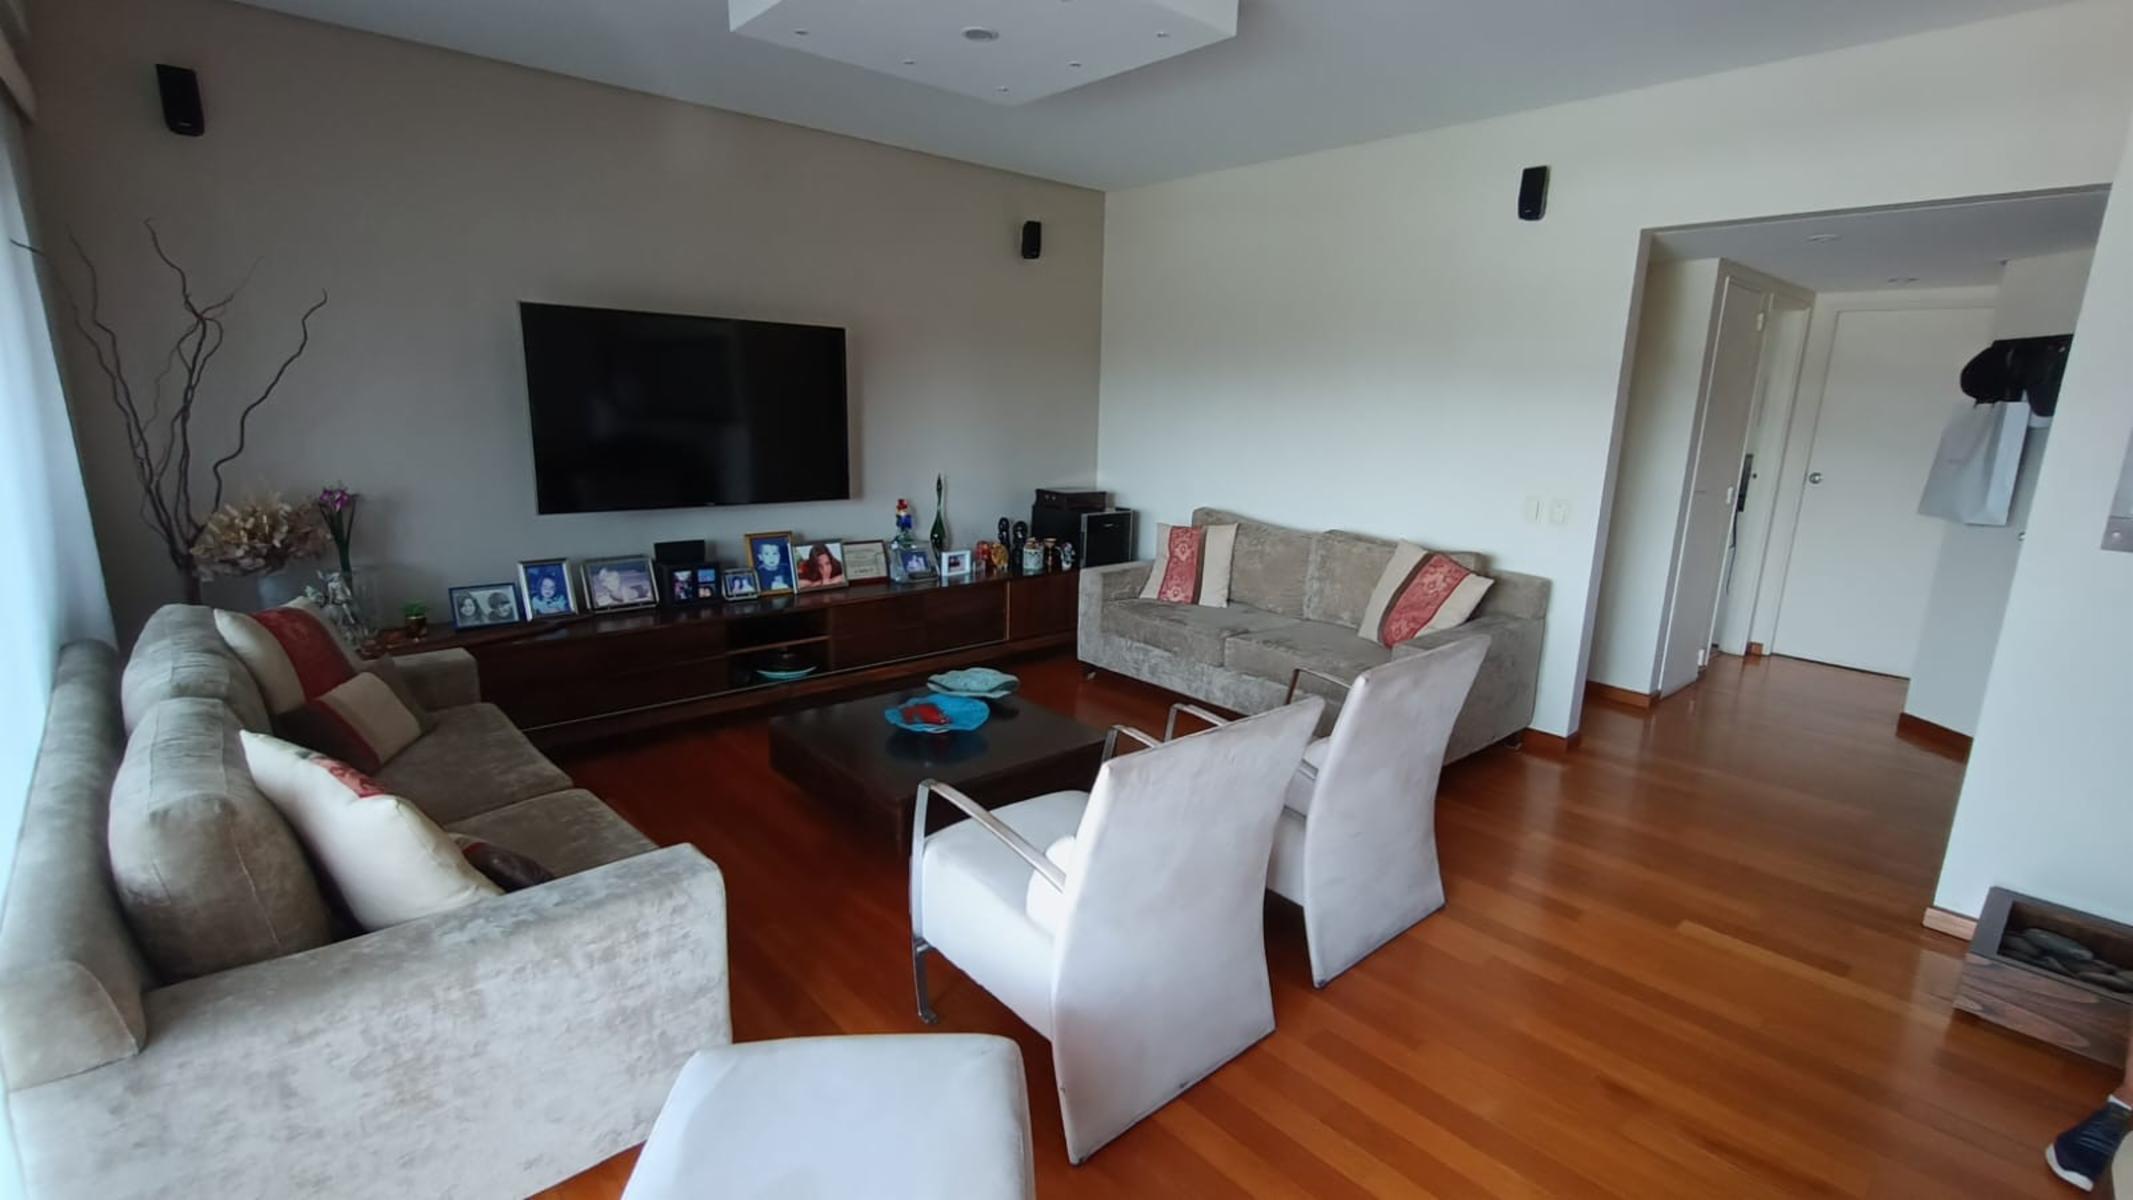 PALERMO, Exclusivo y confortable piso de 4 ambientes con cochera doble y baulera.